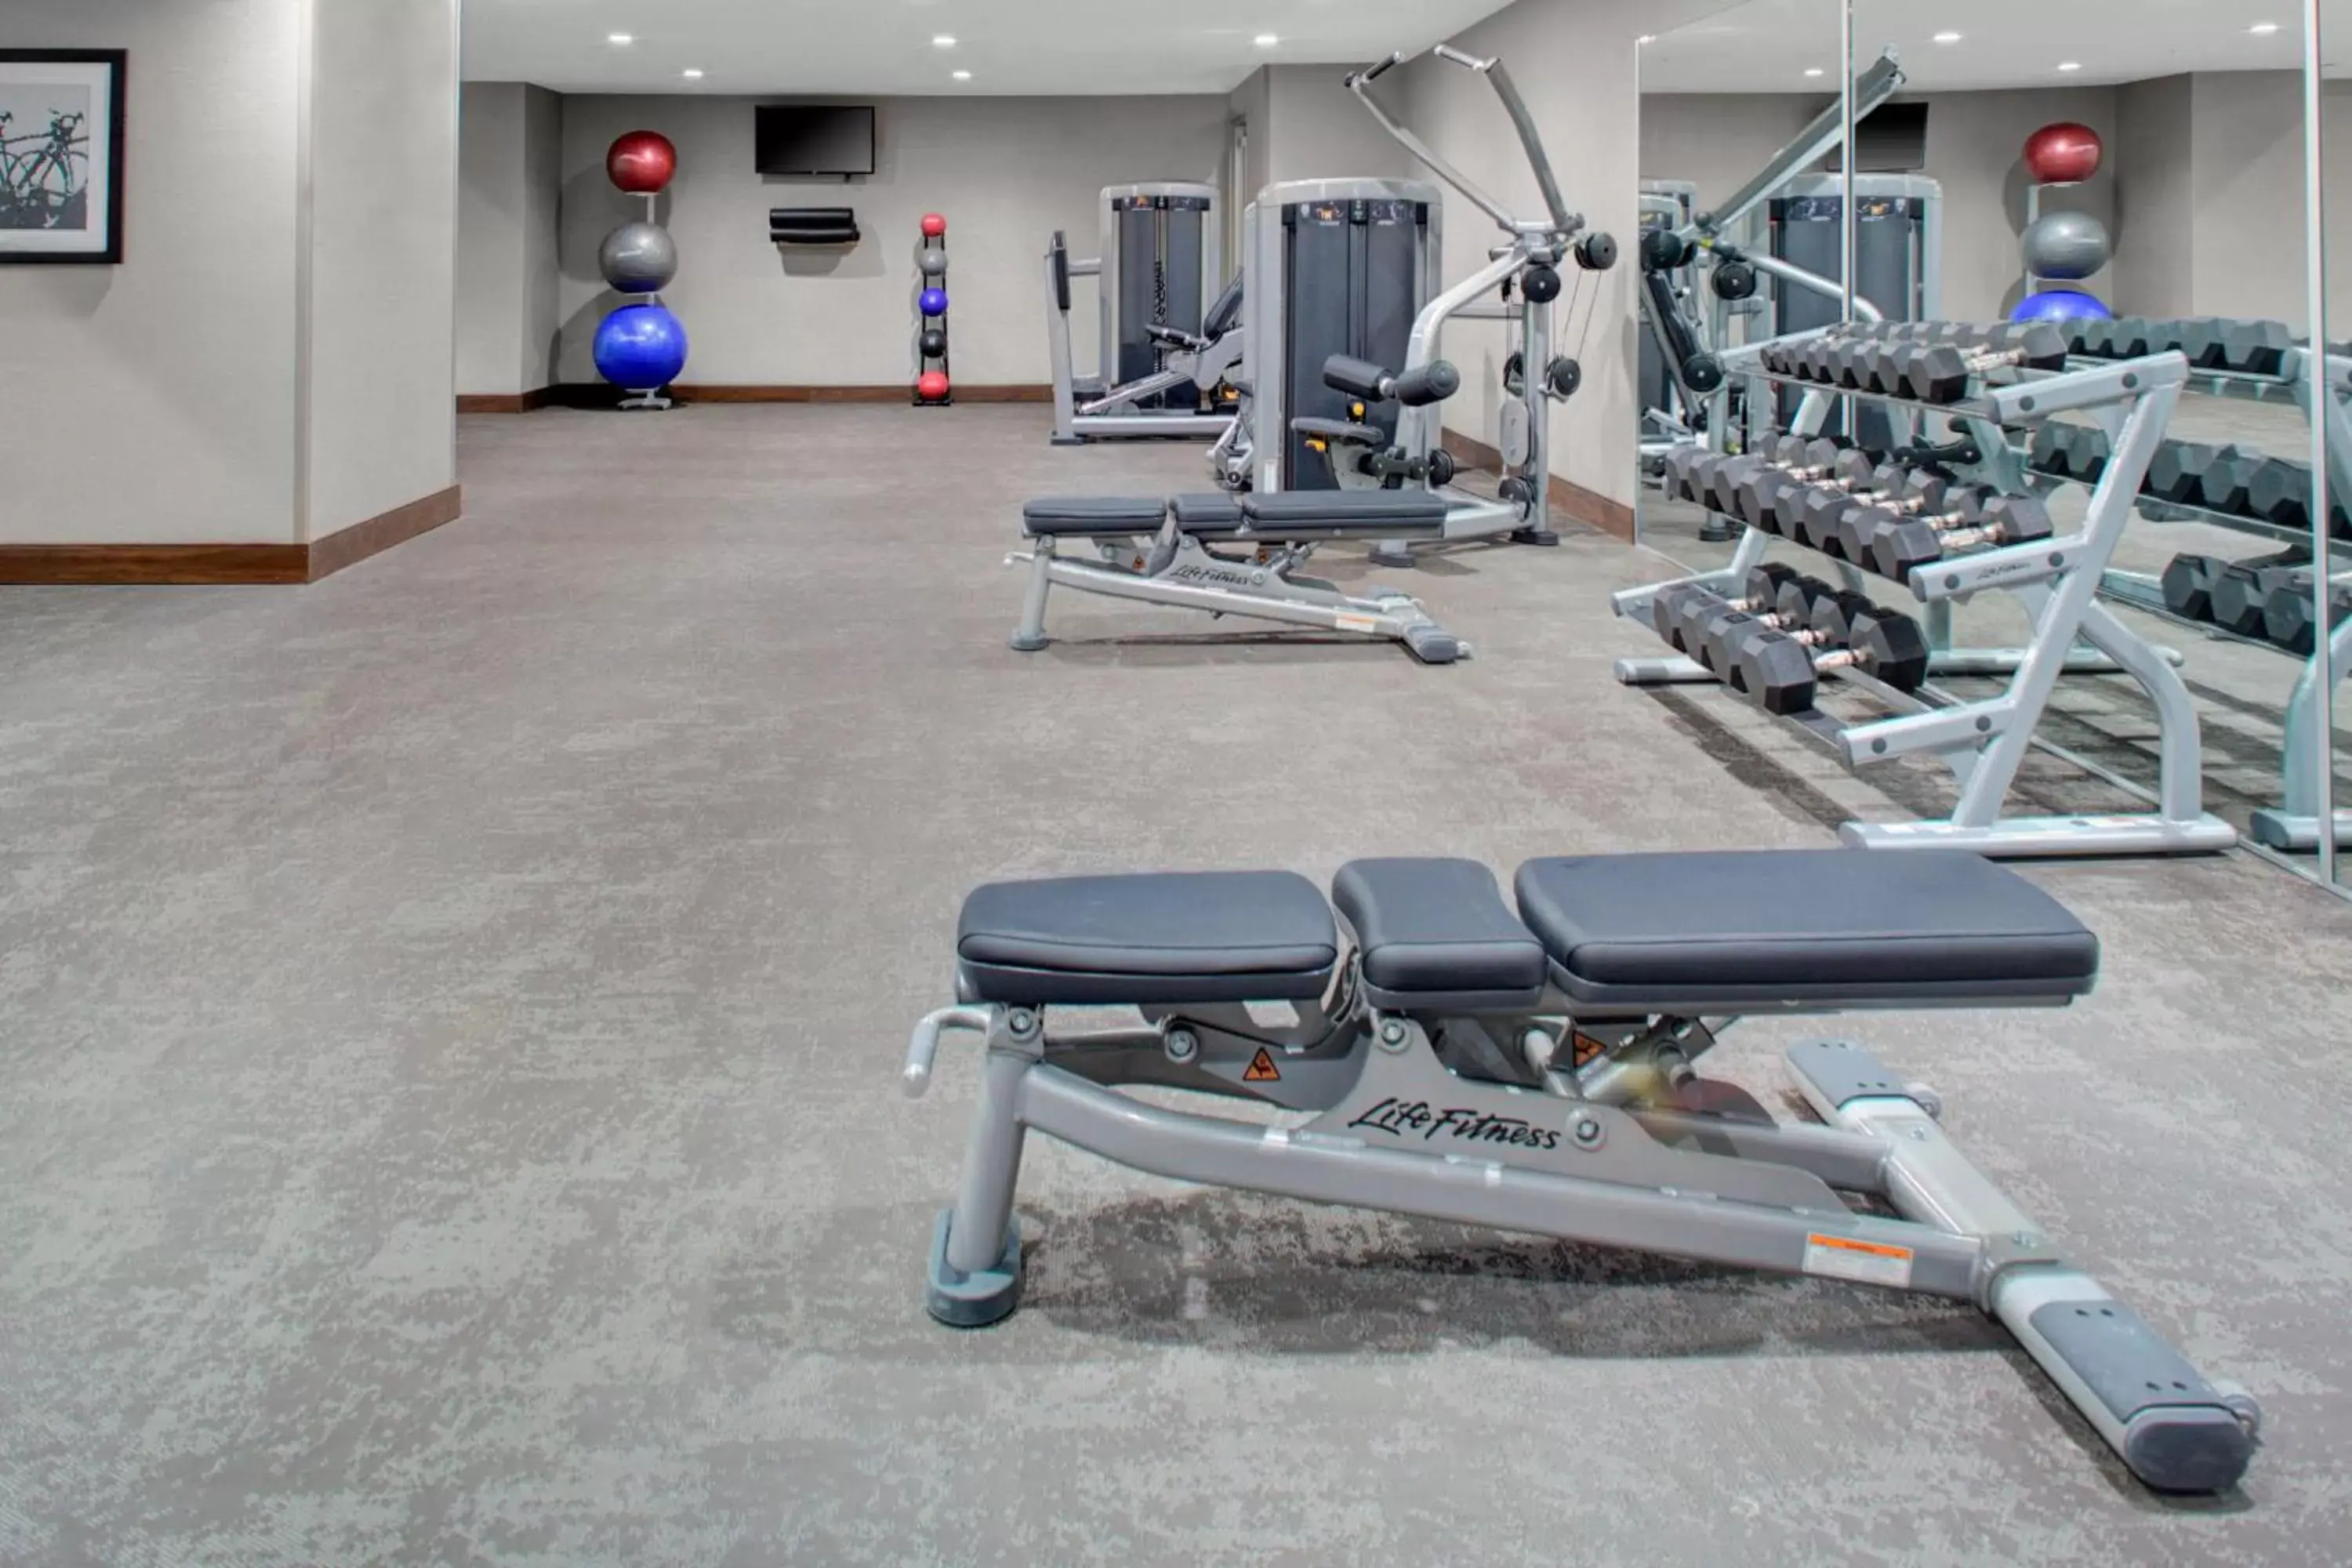 Fitness centre/facilities, Fitness Center/Facilities in Residence Inn by Marriott Boulder Broomfield/Interlocken